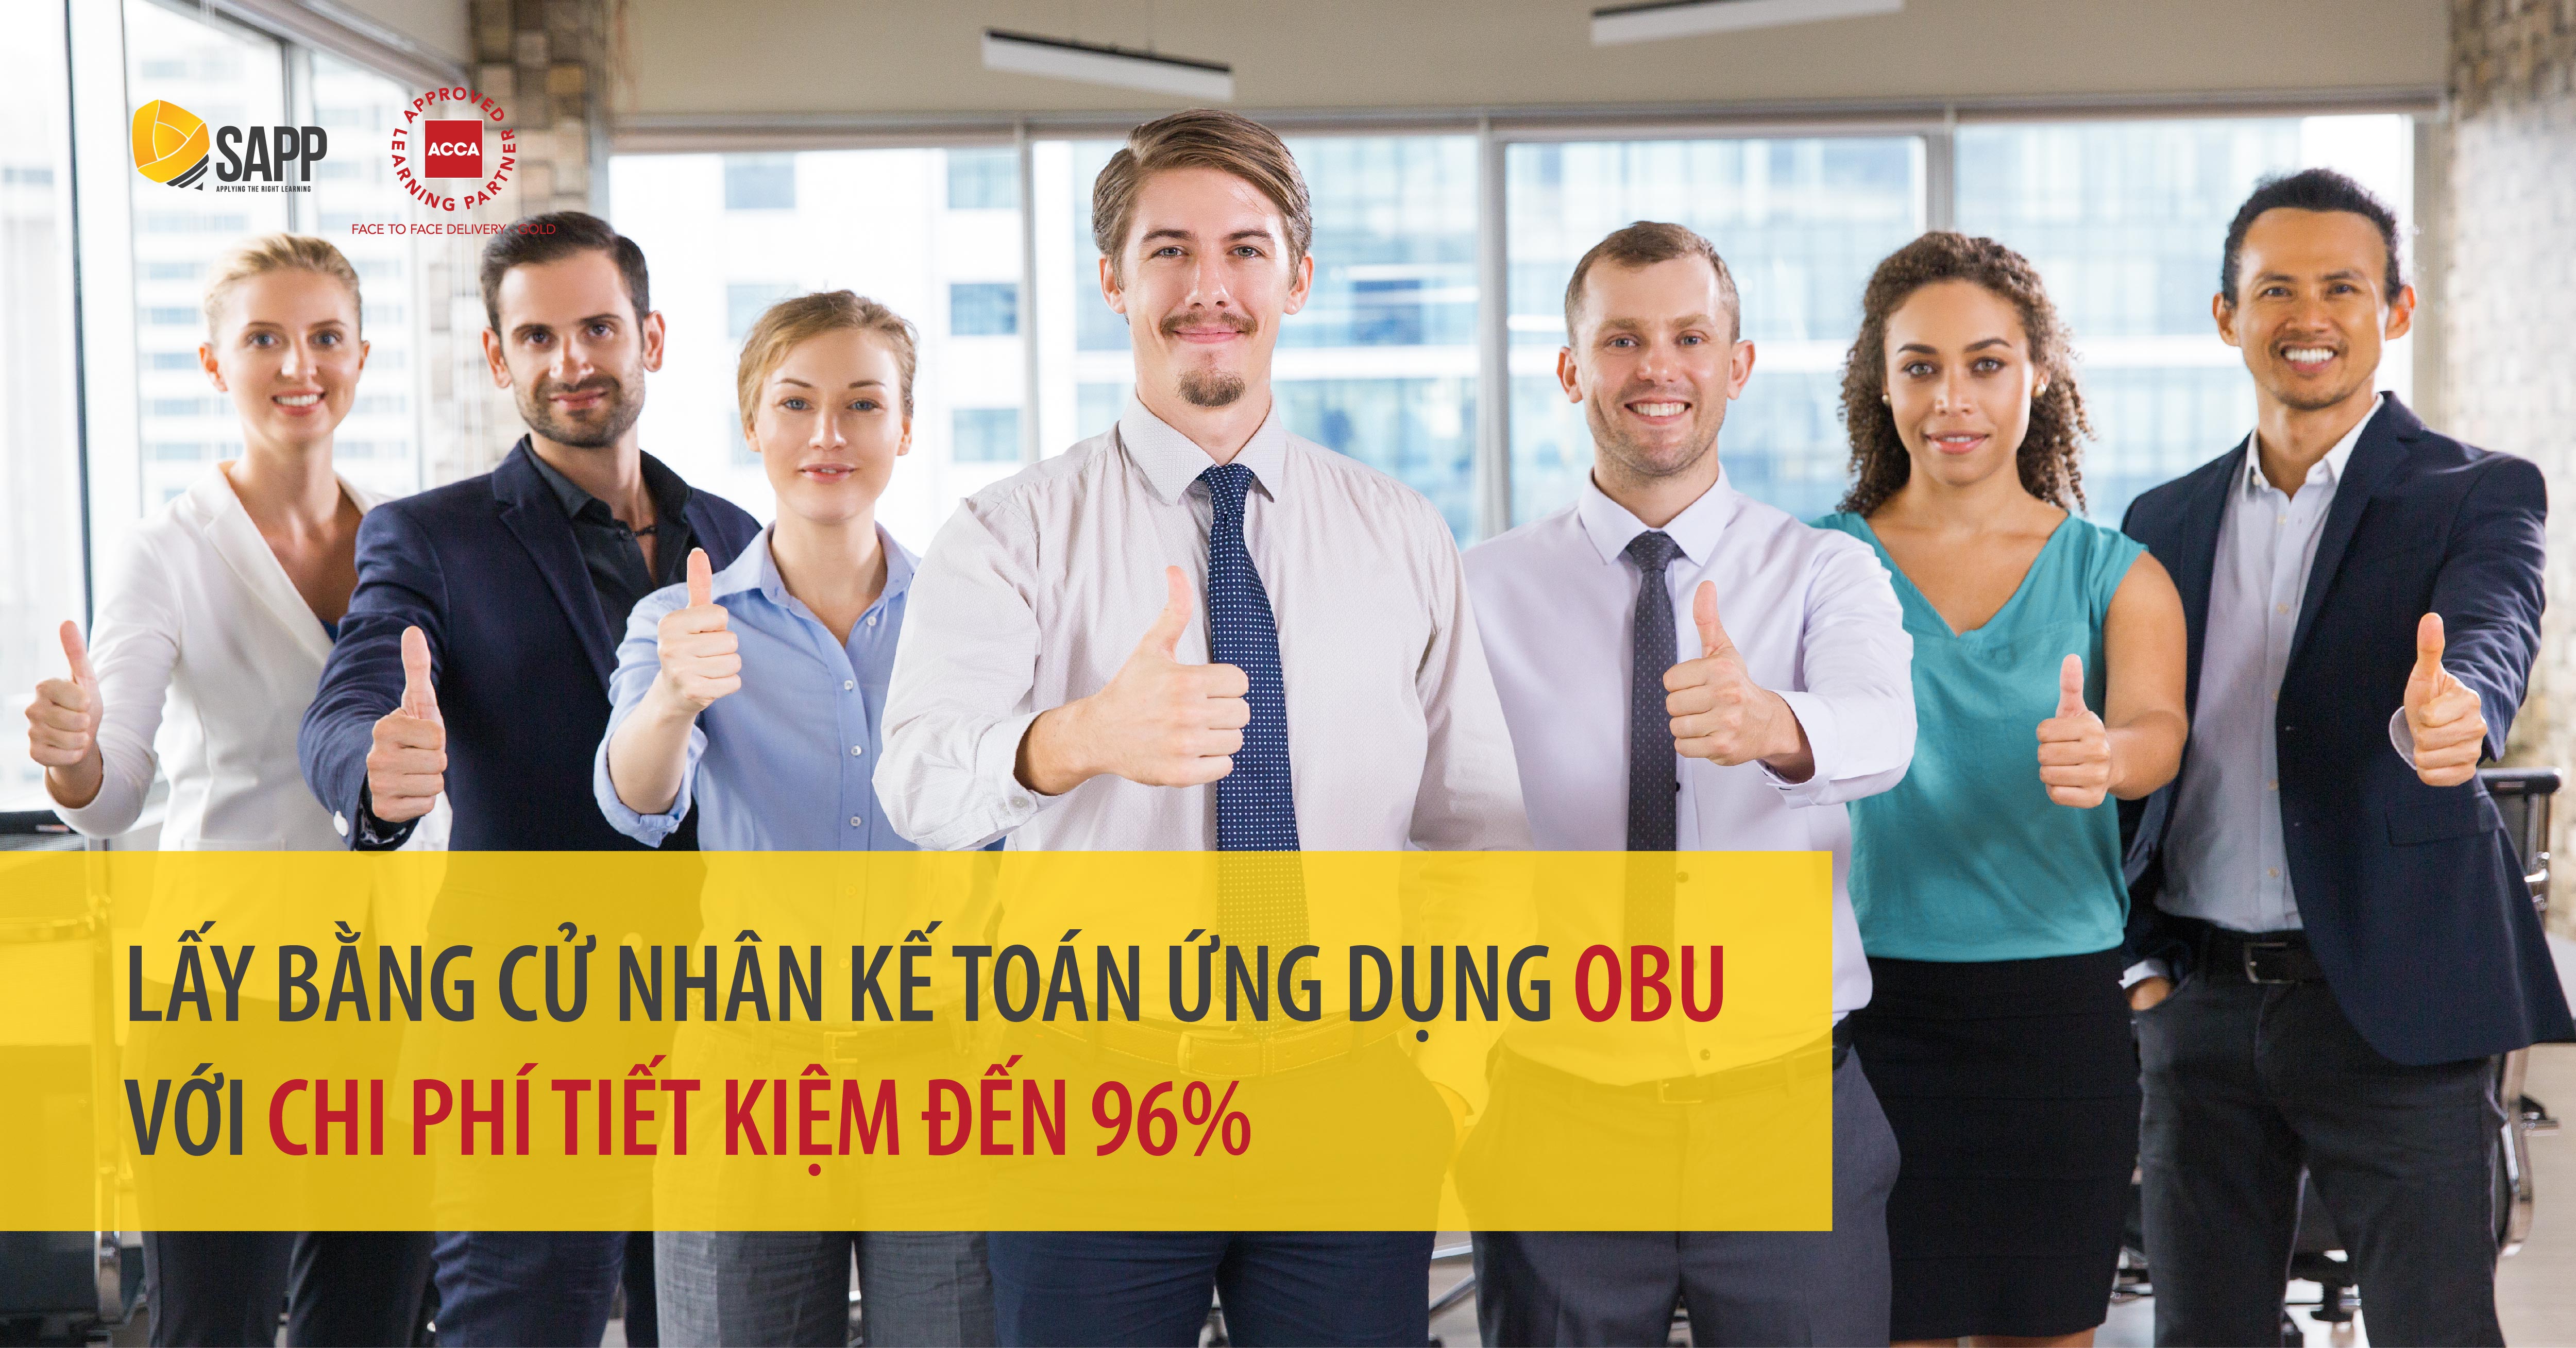 Lấy bằng Cử nhân Kế toán ứng dụng OBU tại Việt Nam với chi phí tiết kiệm đến 96%